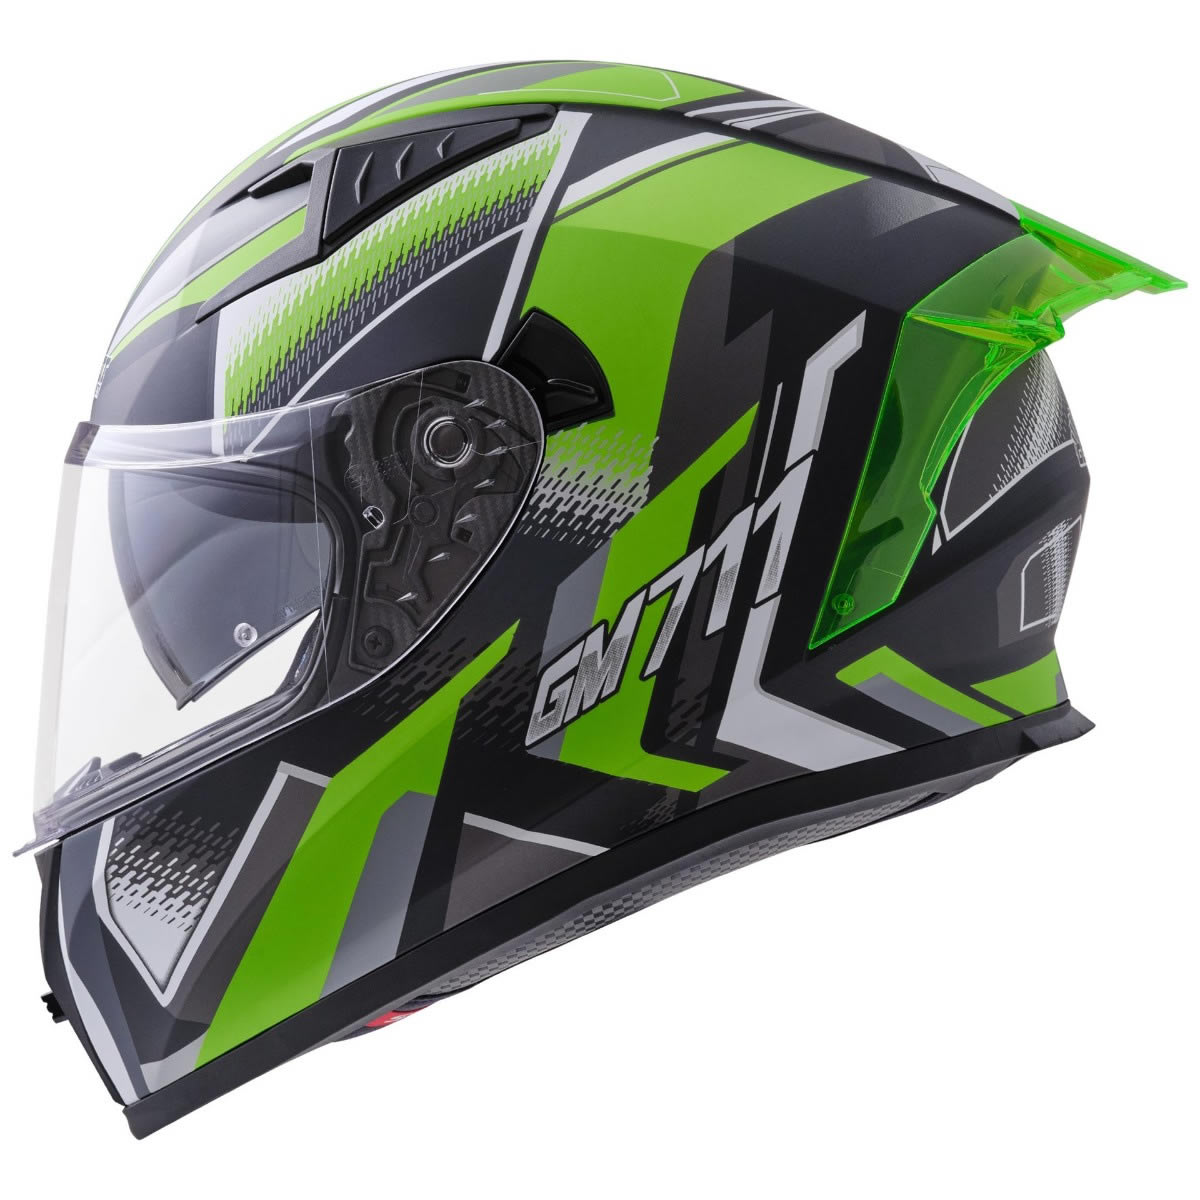 Germot GM 711 Helm, schwarz-grün matt